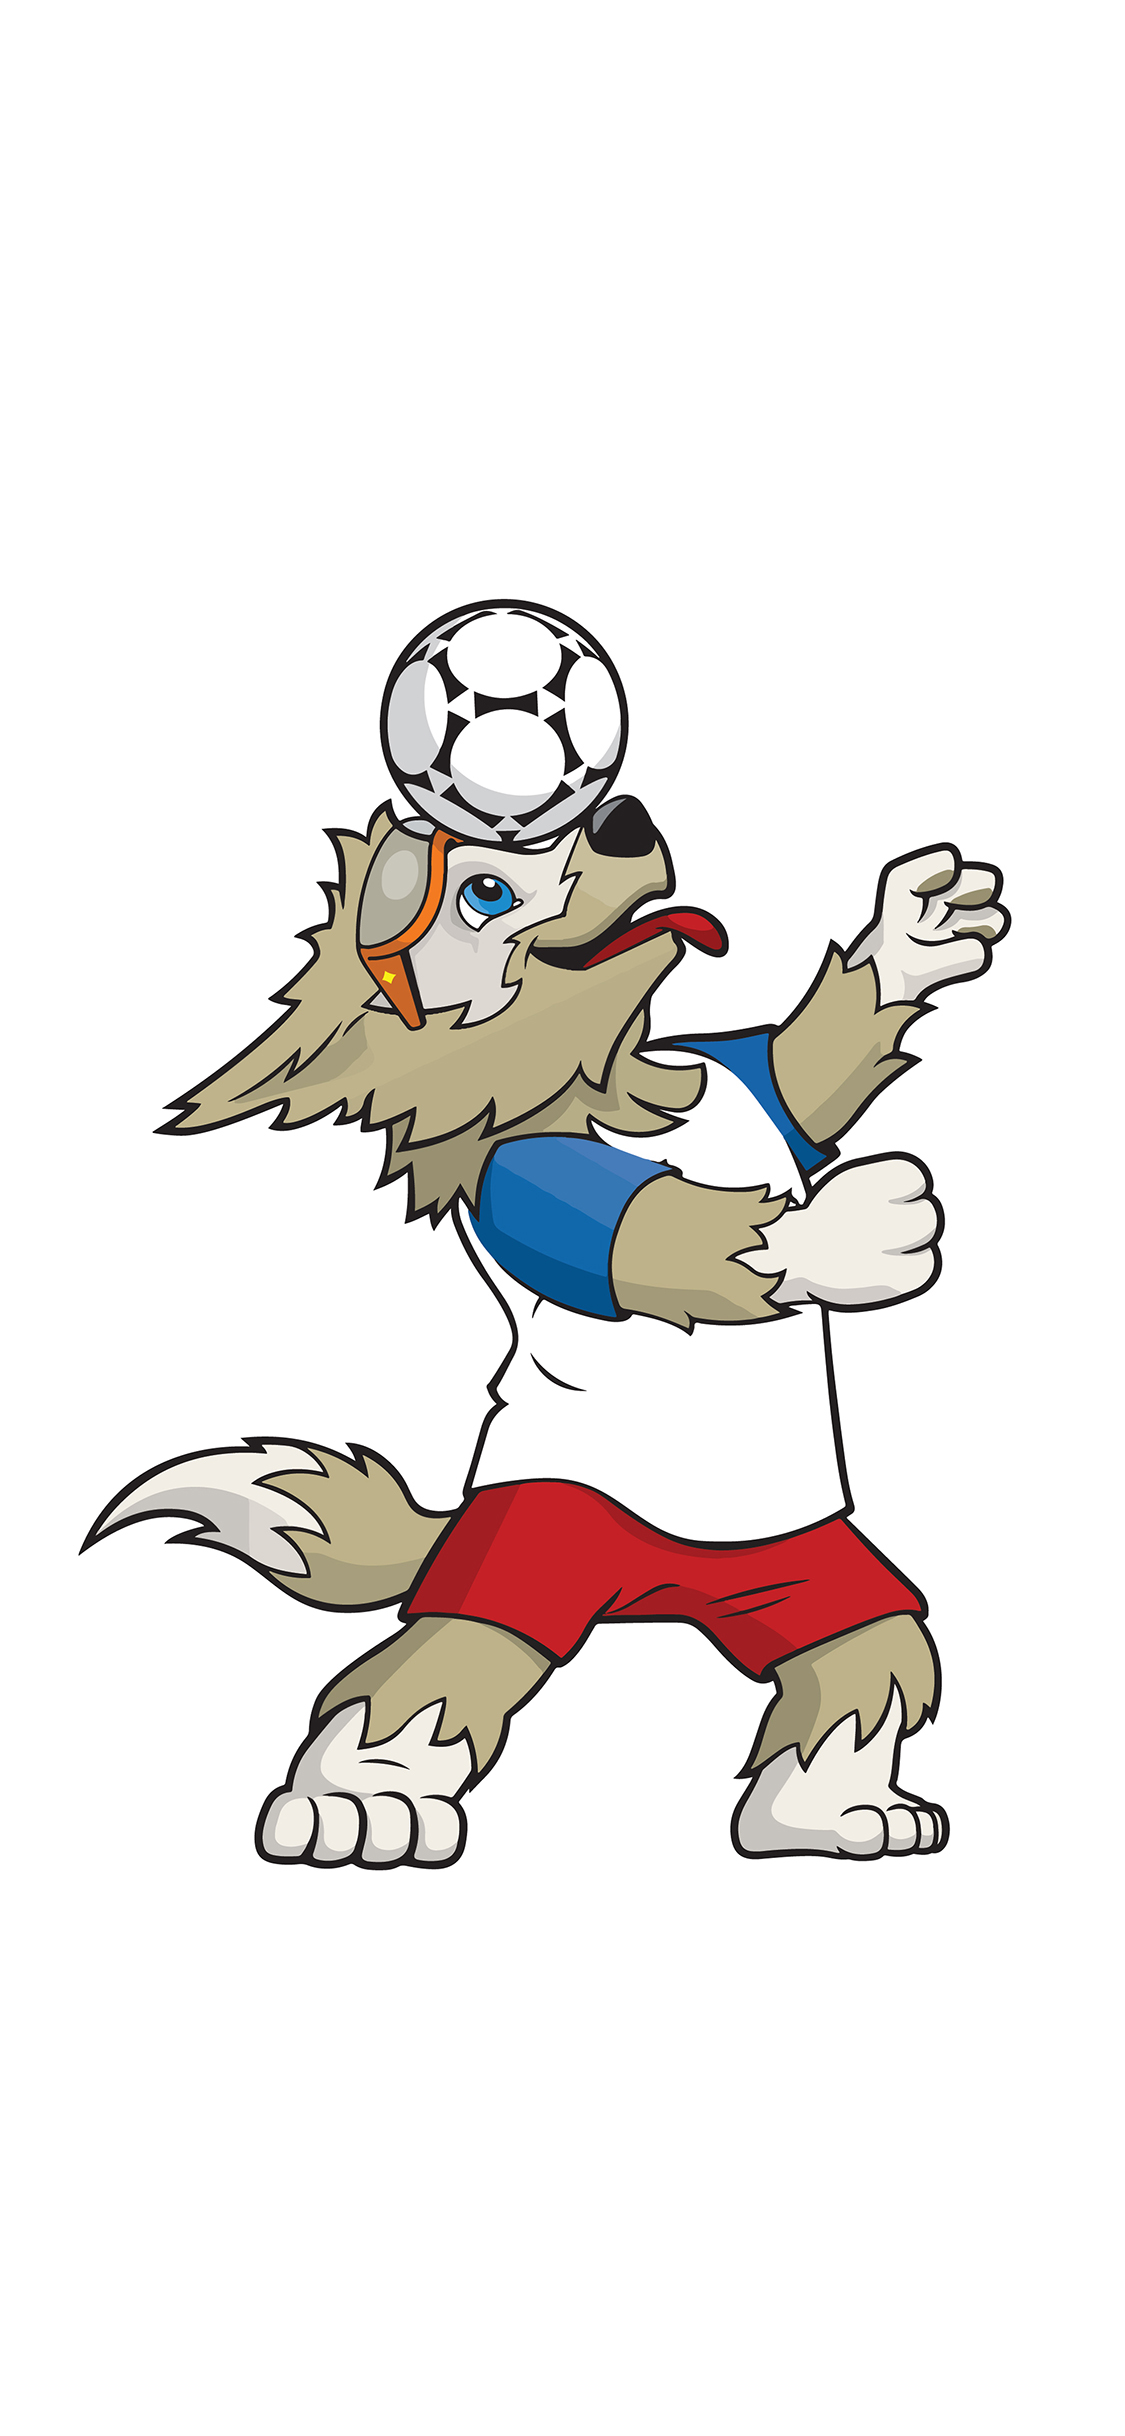 世界杯 西伯利亚狼 扎比瓦卡 吉祥物 足球 苹果手机高清壁纸 1125x